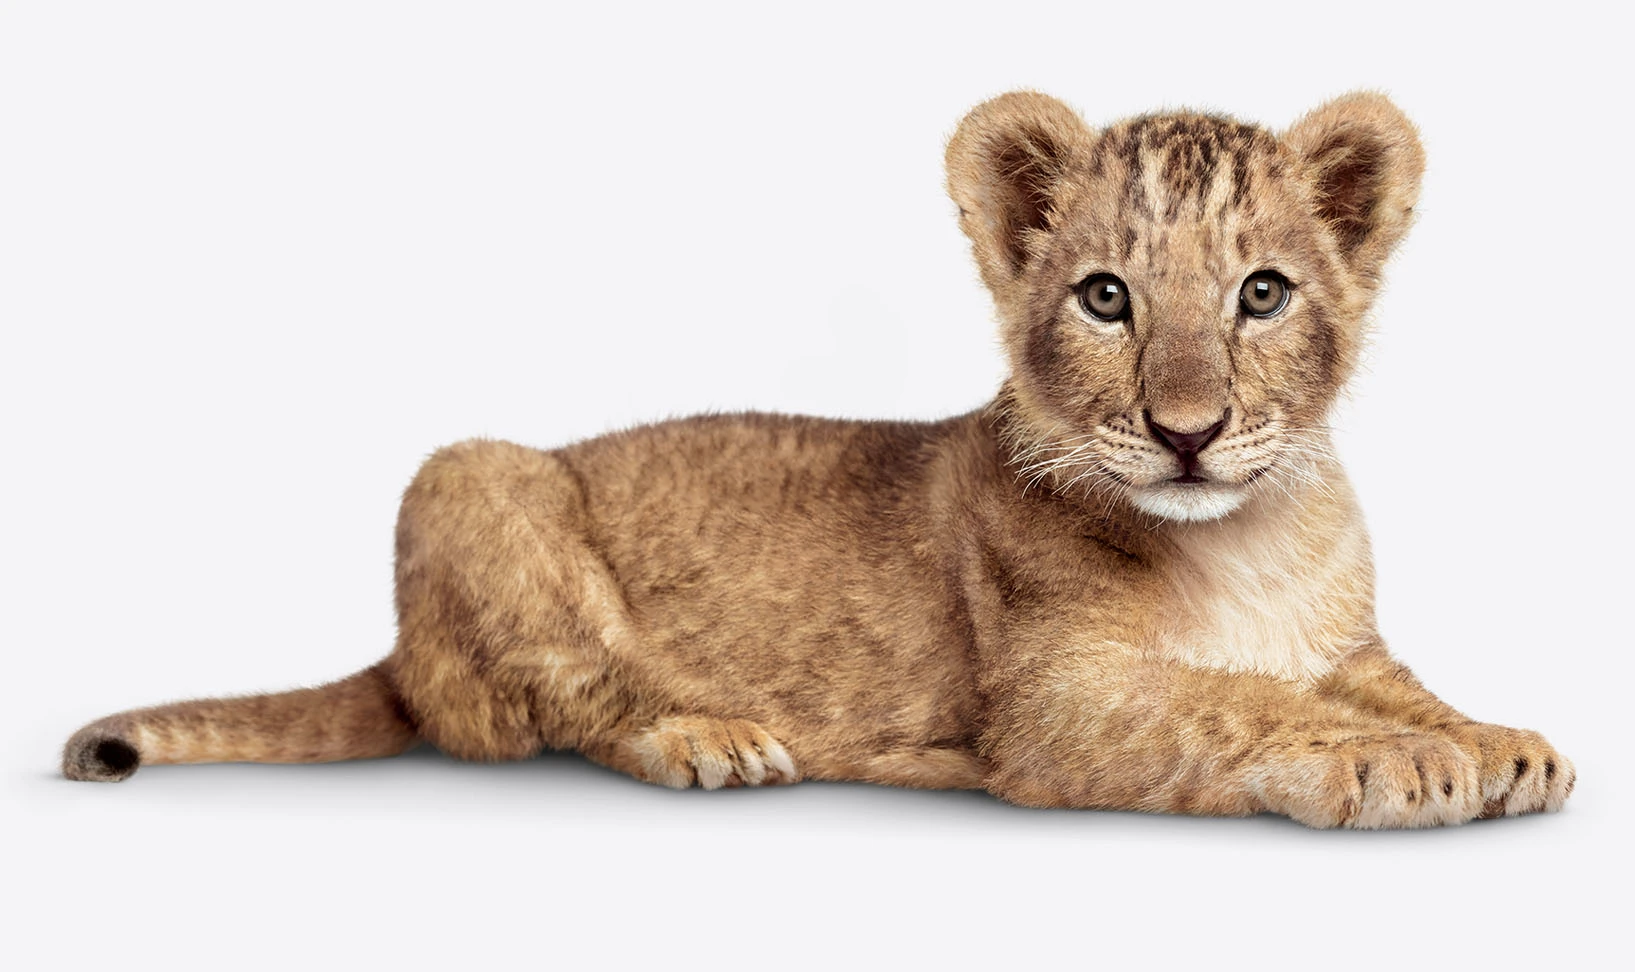 A lion cub gazing straight ahead